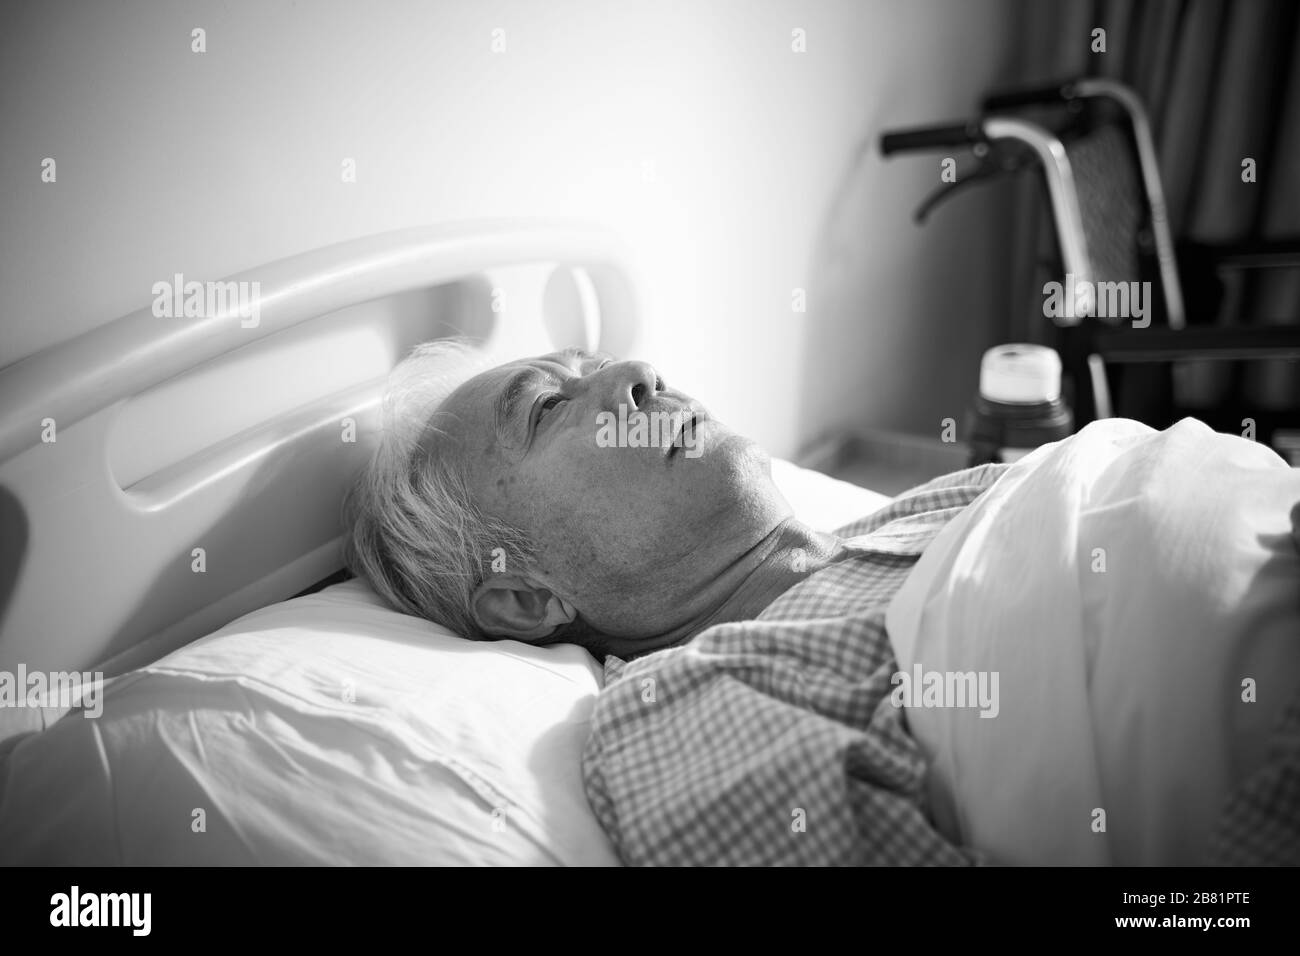 un homme asiatique malade allongé dans un lit d'hôpital semble triste et sans heurt, noir et blanc Banque D'Images